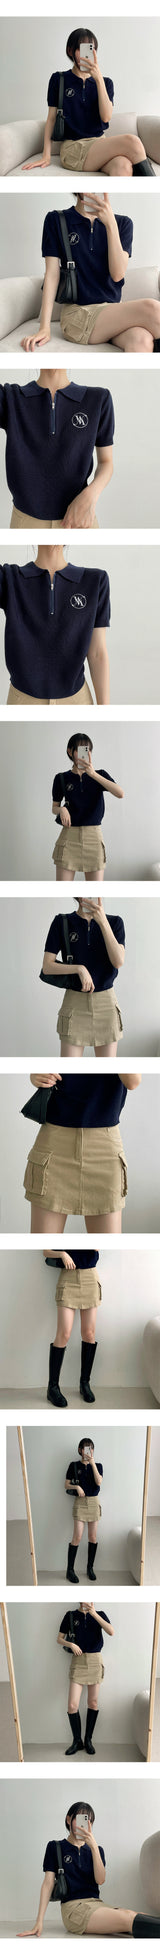 ミカゴミニスカート / MGICAGO MINI-Skirt